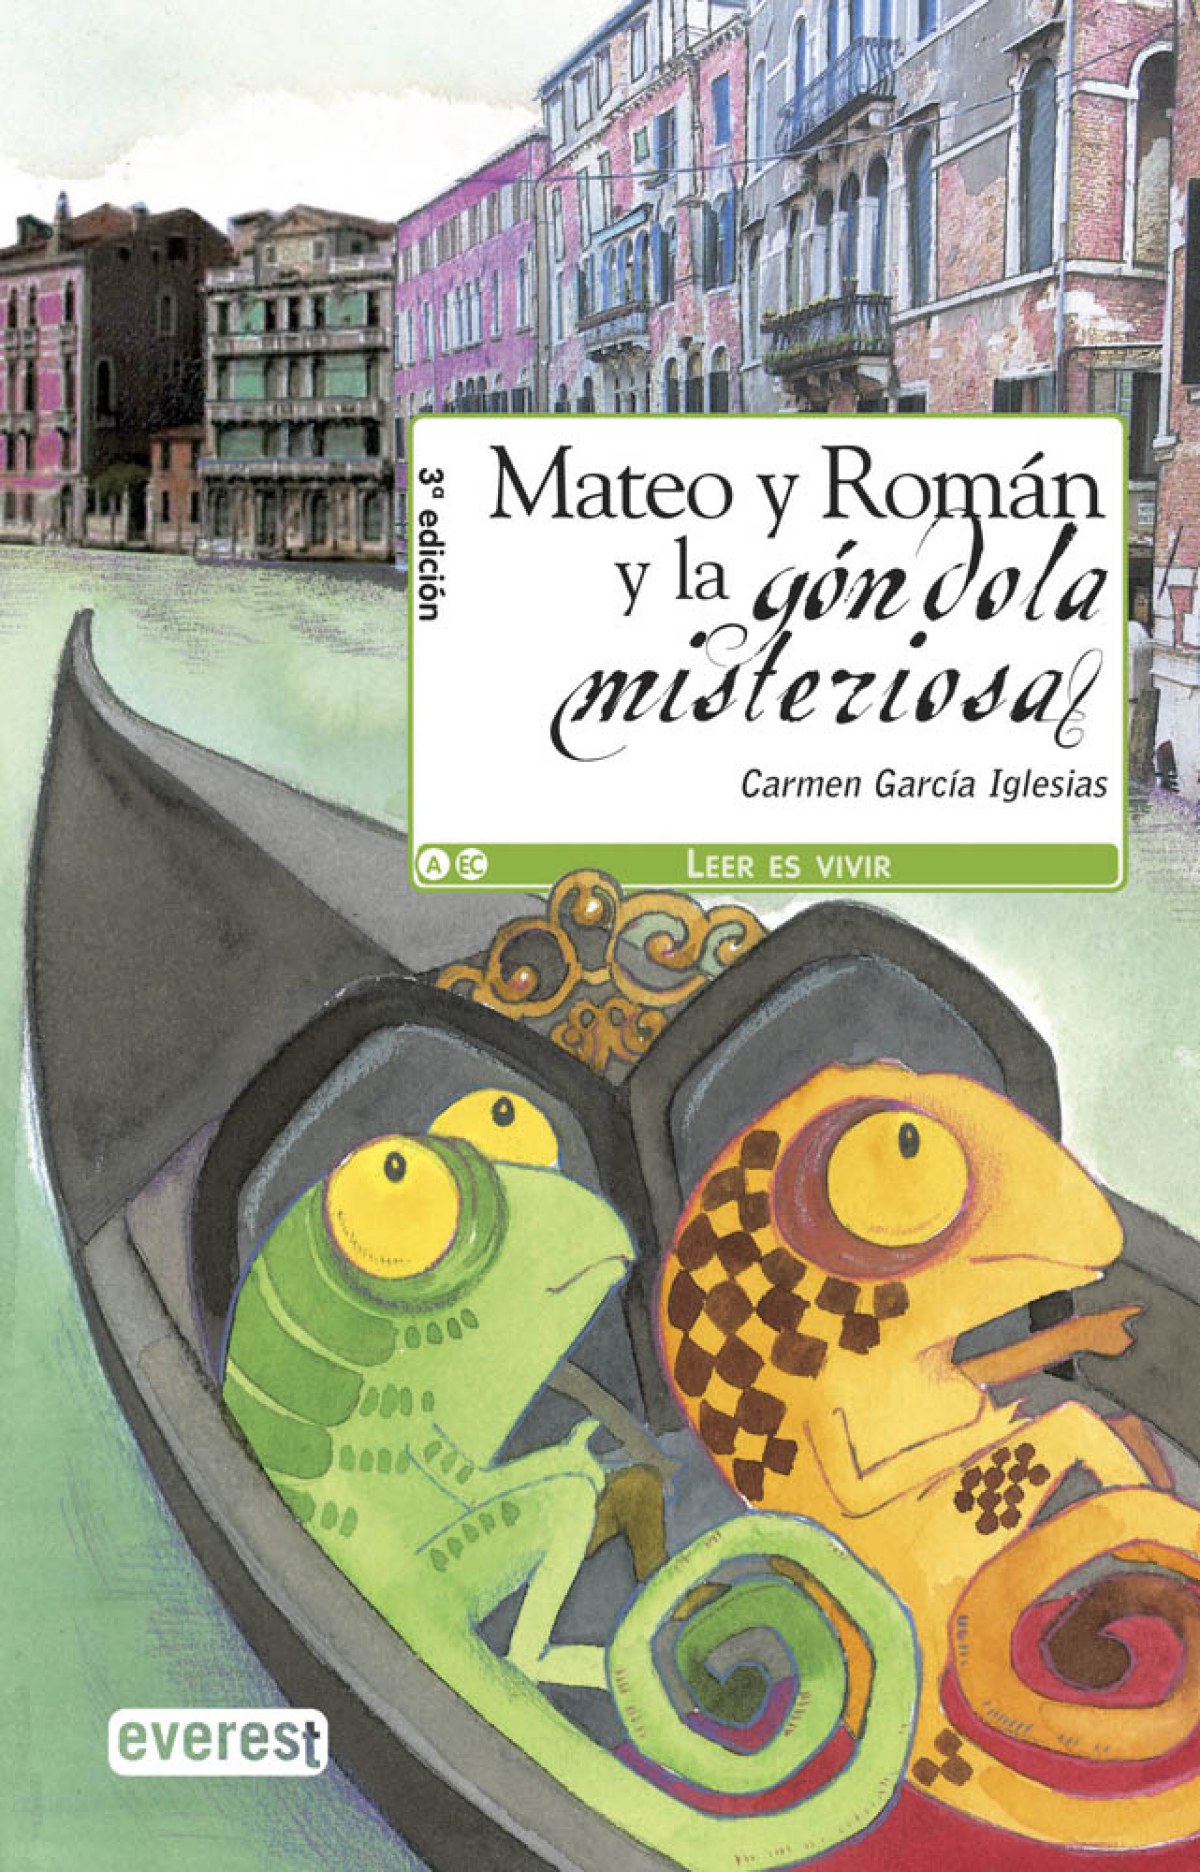 Mateo y Román y la góndola misteriosa - Carmen García Iglesias